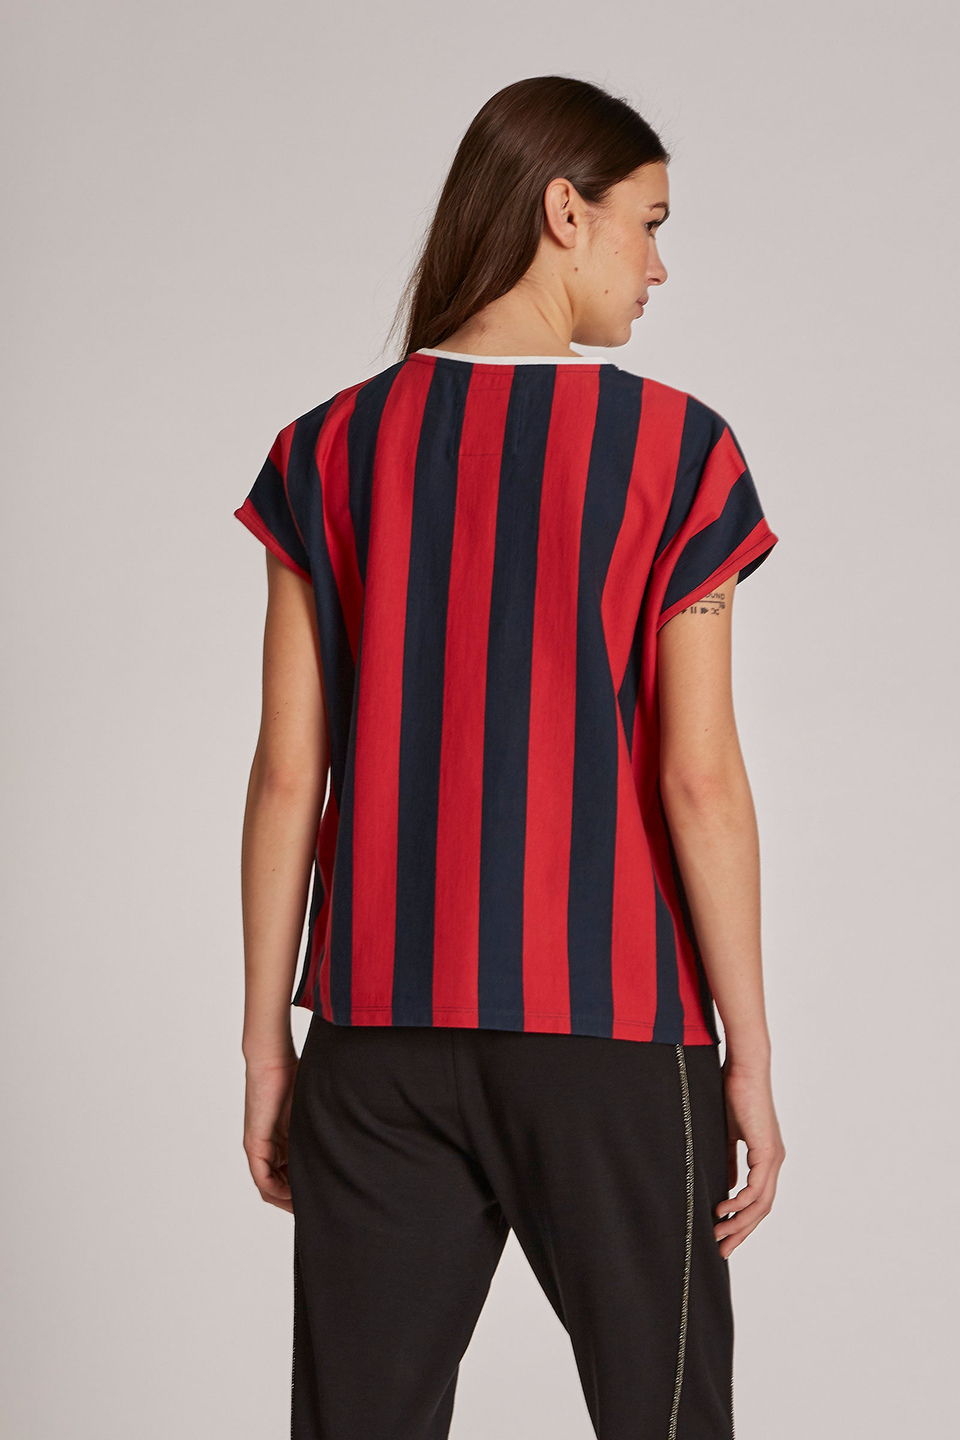 Damen-T-Shirt aus 100 % Baumwolle mit zweifarbigen Streifen im Regular Fit | La Martina - Official Online Shop